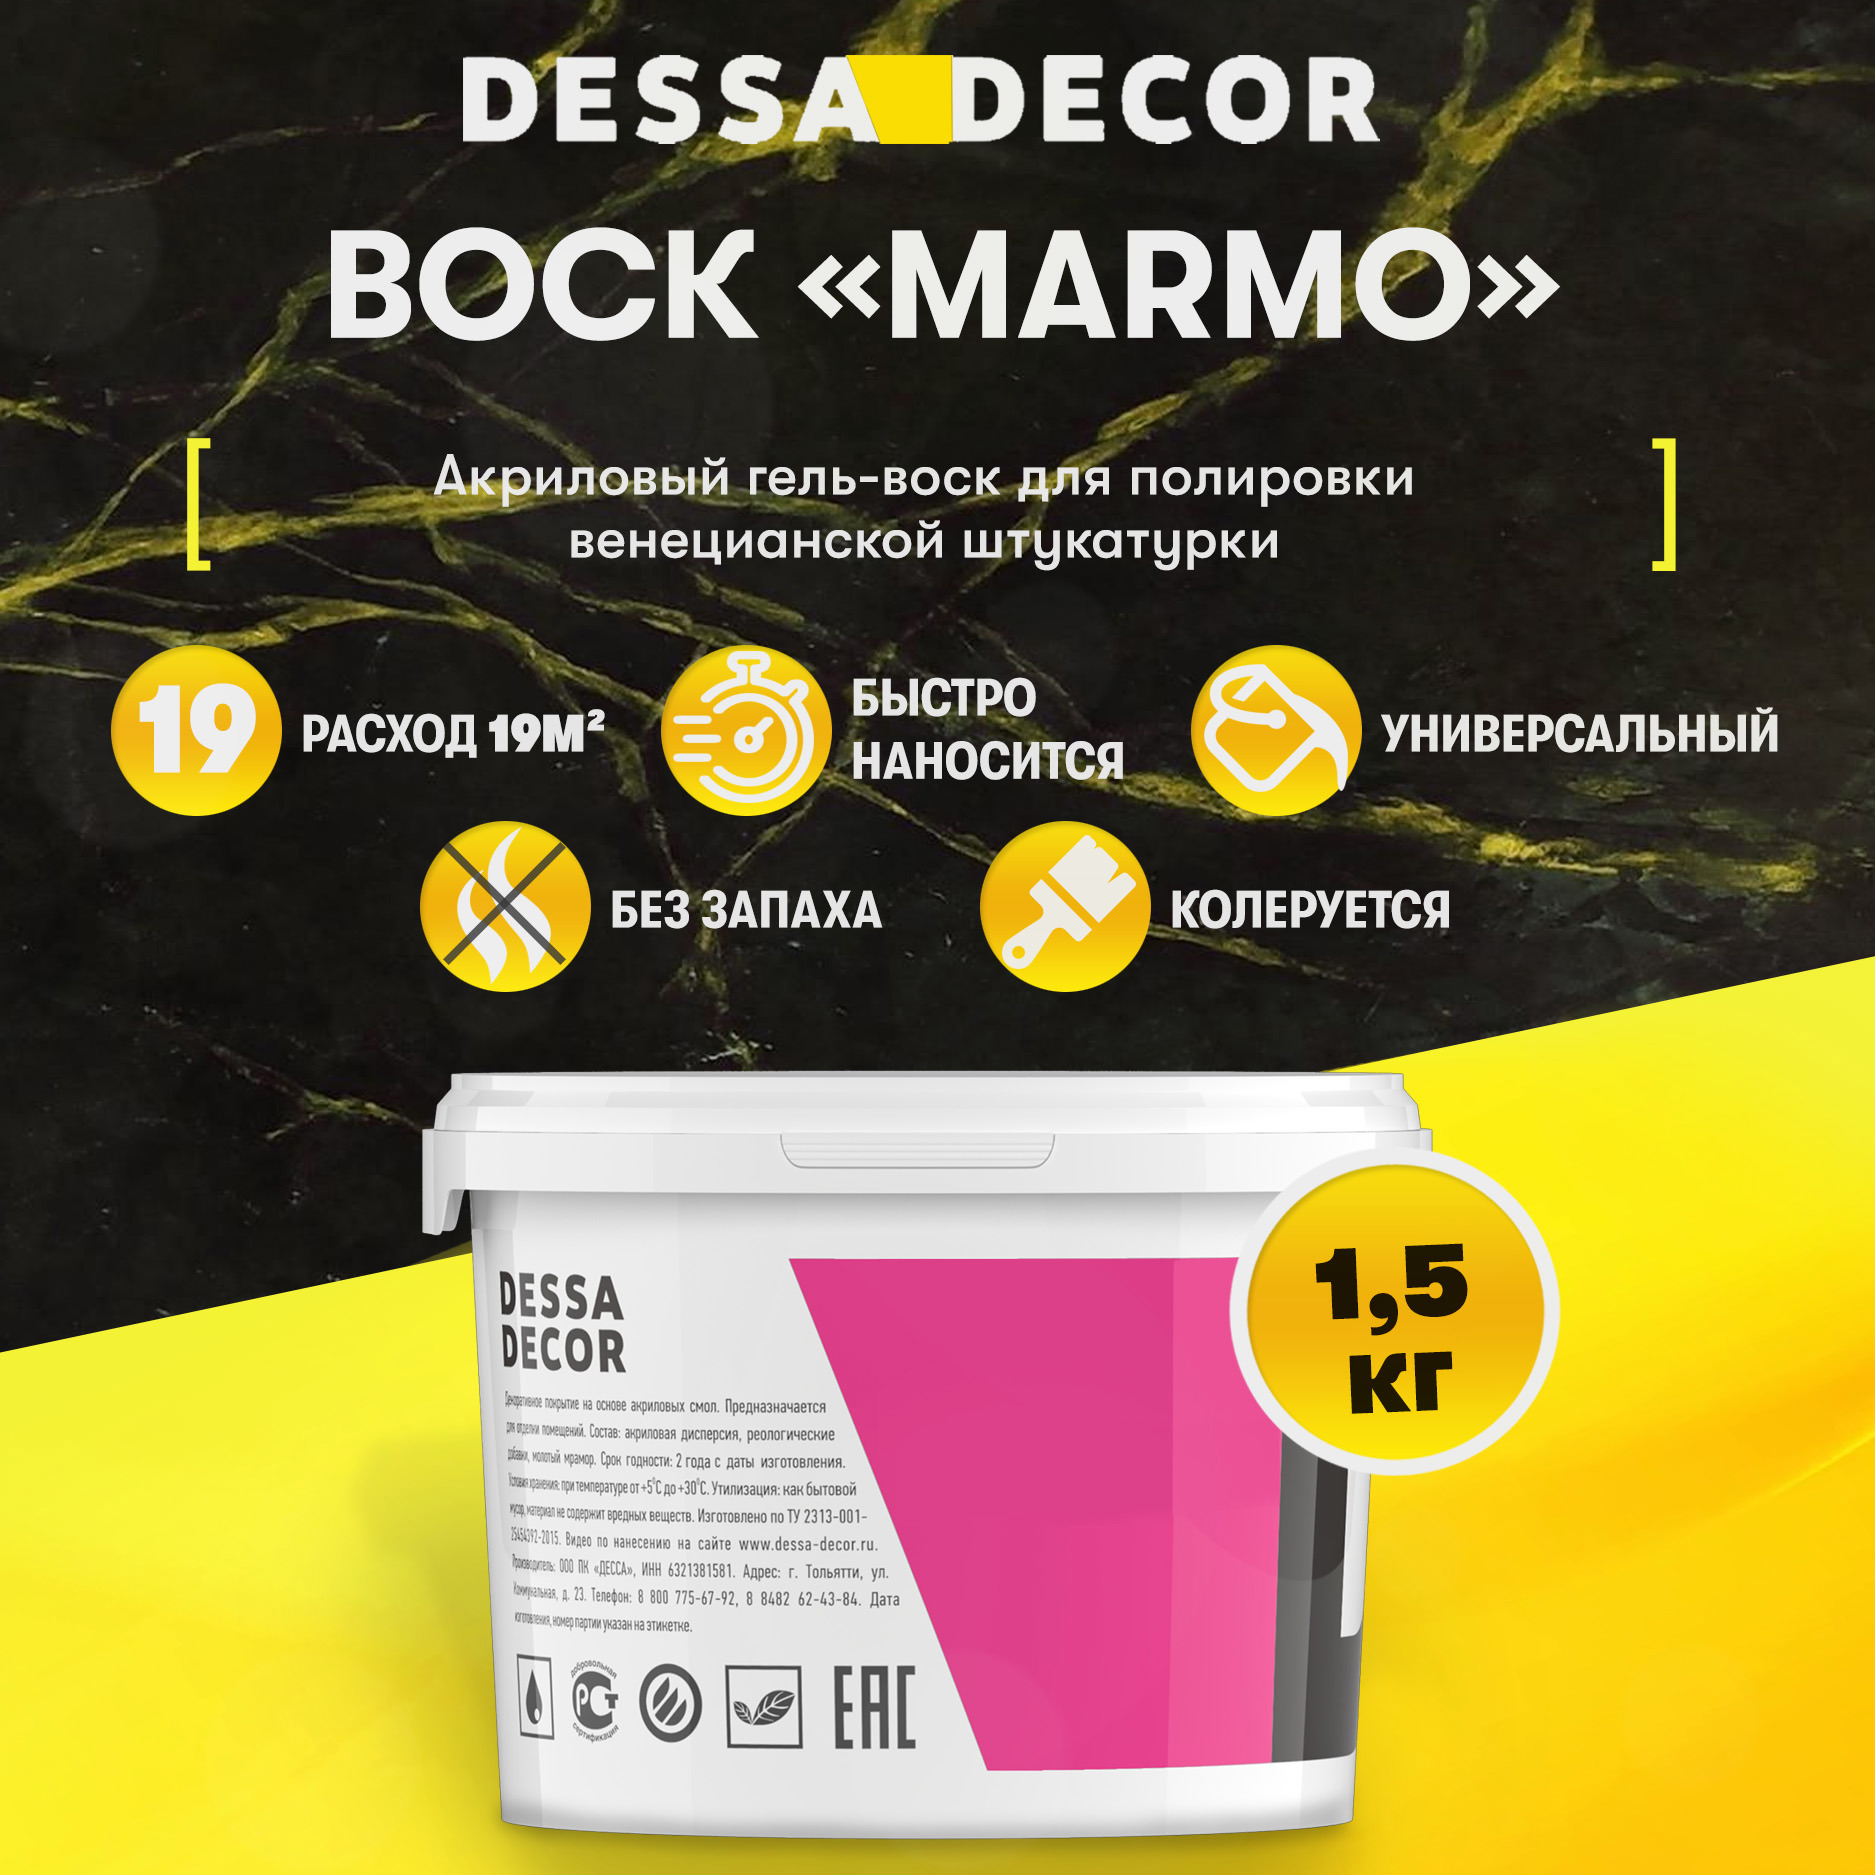 91259319 Воск для венецианской штукатурки Marmo для полировки цвет бесцветный 1.5 кг STLM-0525224 DESSA DECOR